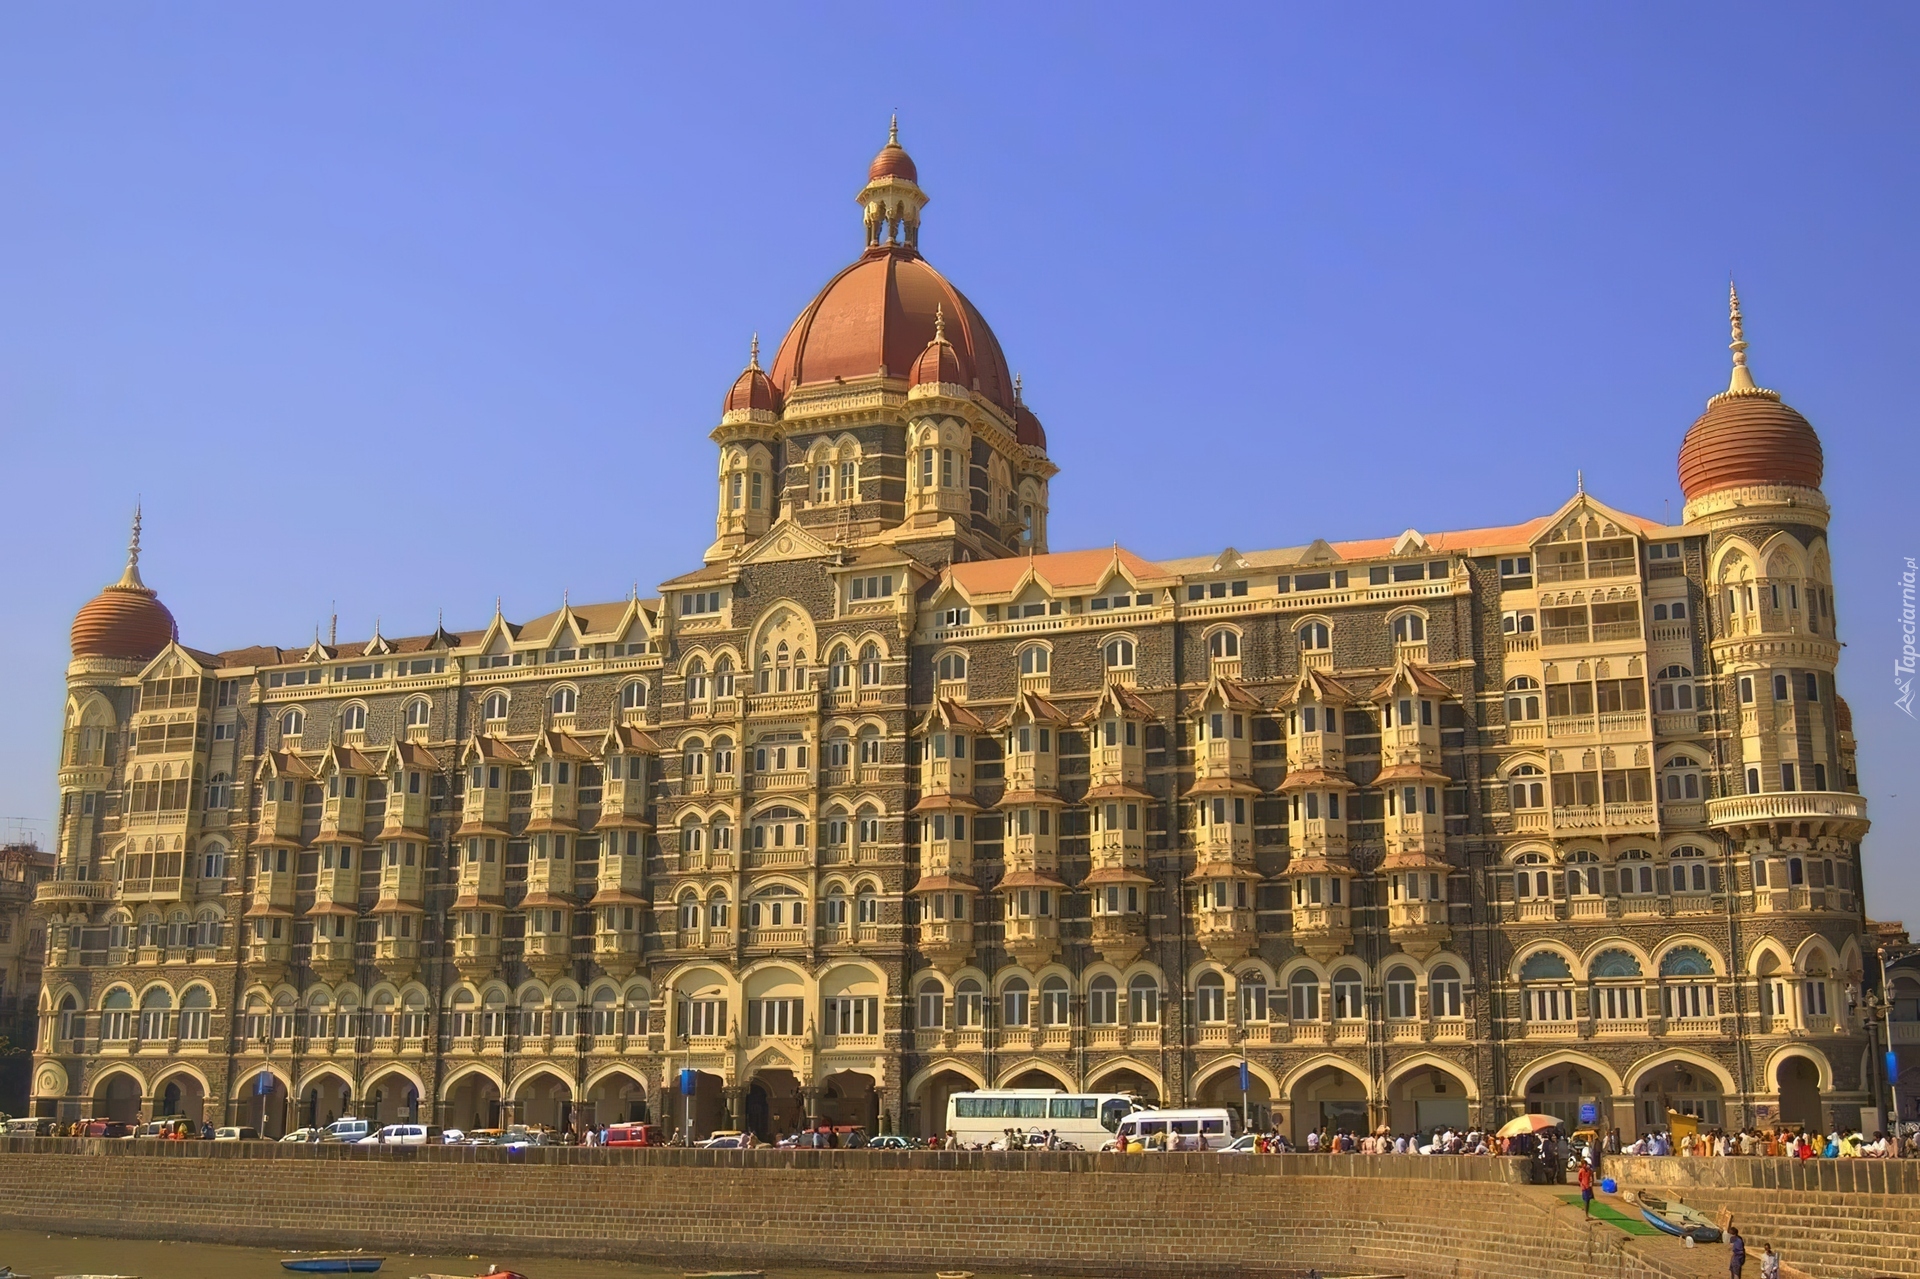 Indie, Bombaj, Hotel, Taj Mahal Palace